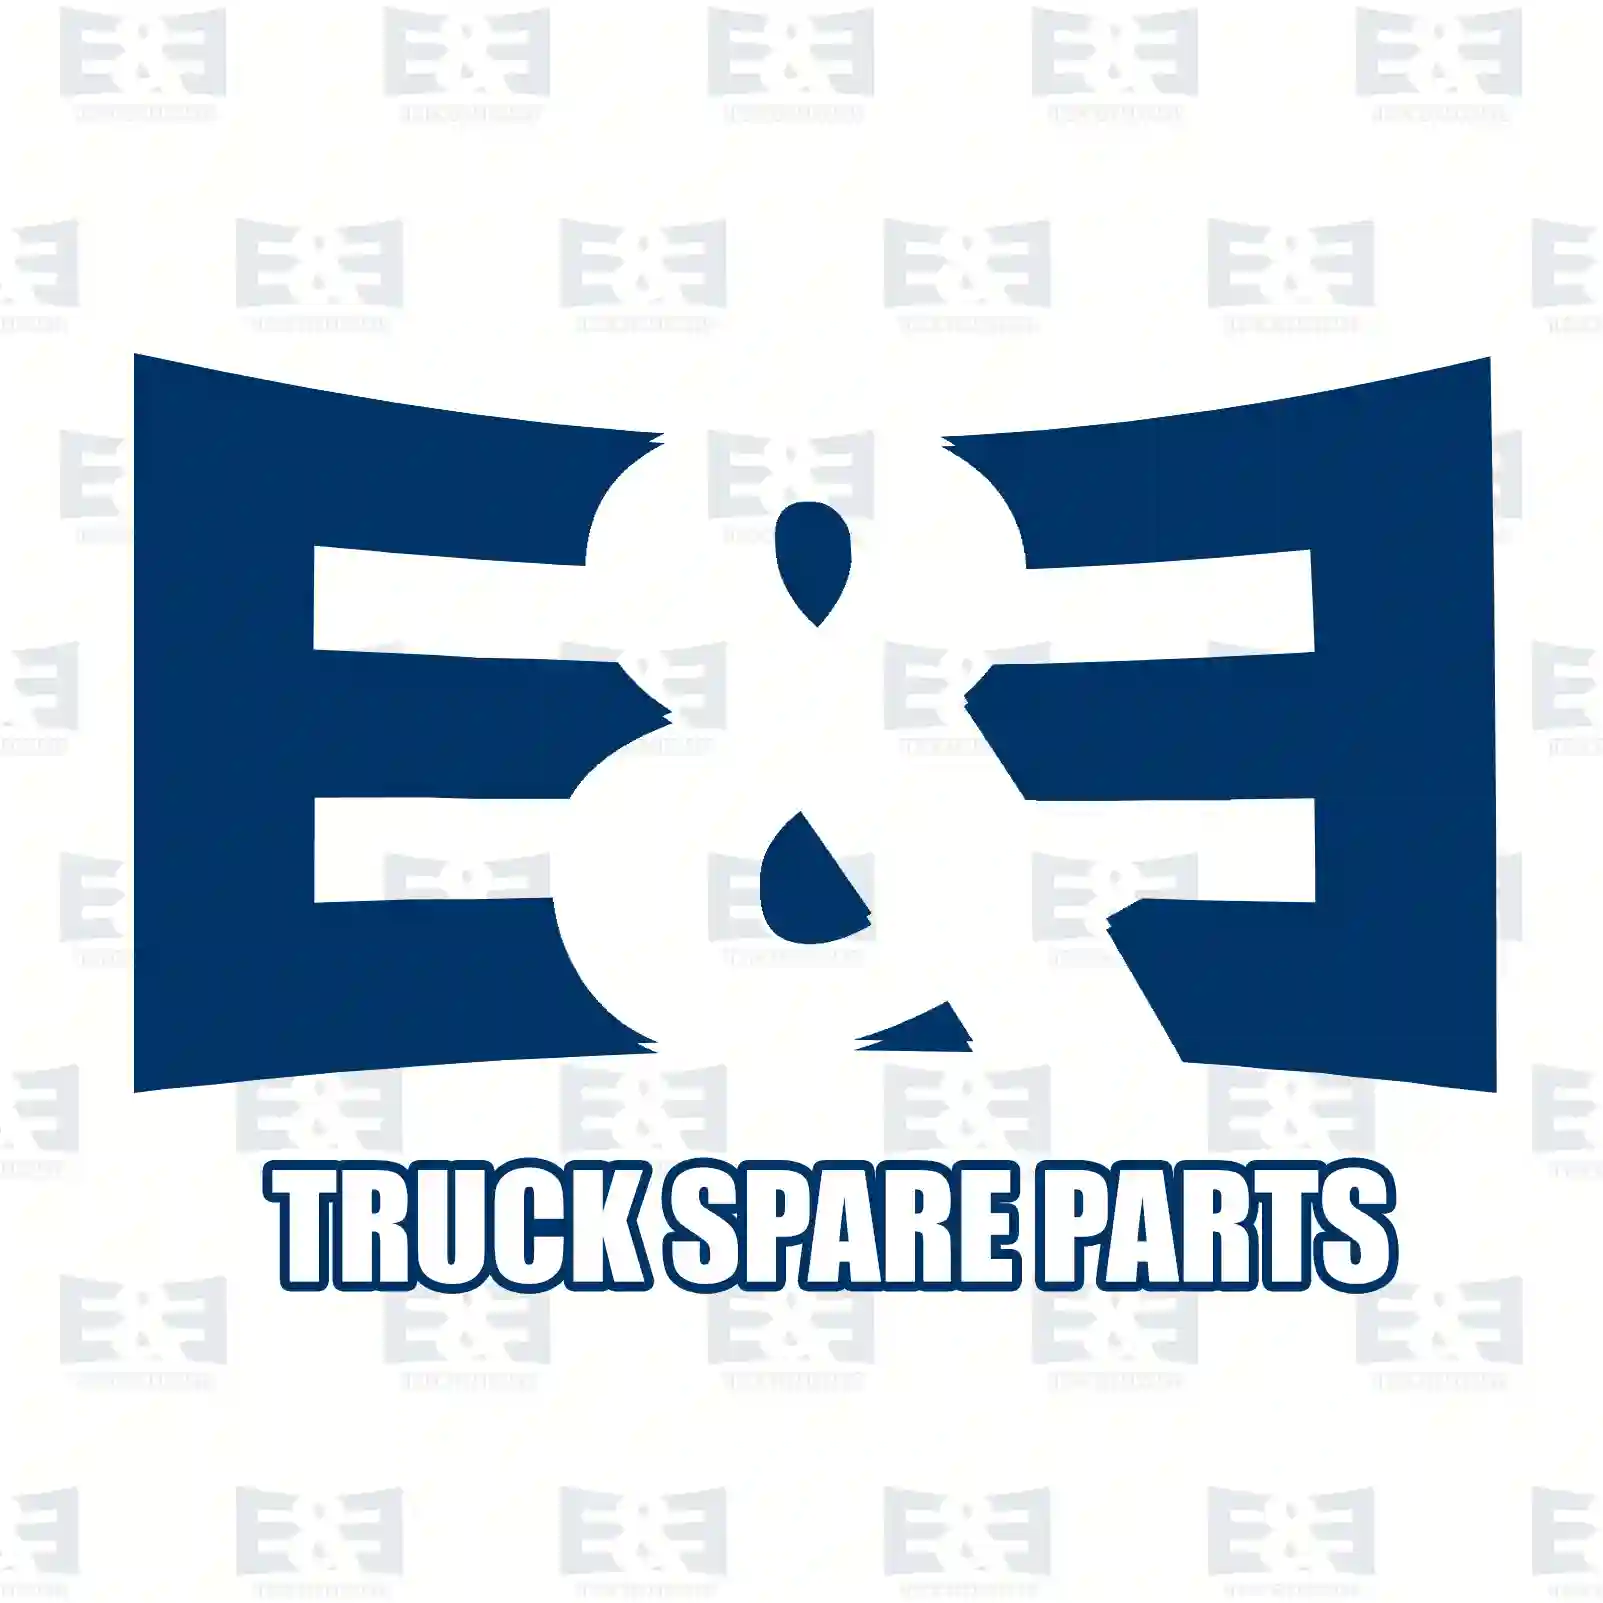 Air tank, 2E2296276, 20714527, 21564823, 23097644, , , , ||  2E2296276 E&E Truck Spare Parts | Truck Spare Parts, Auotomotive Spare Parts Air tank, 2E2296276, 20714527, 21564823, 23097644, , , , ||  2E2296276 E&E Truck Spare Parts | Truck Spare Parts, Auotomotive Spare Parts